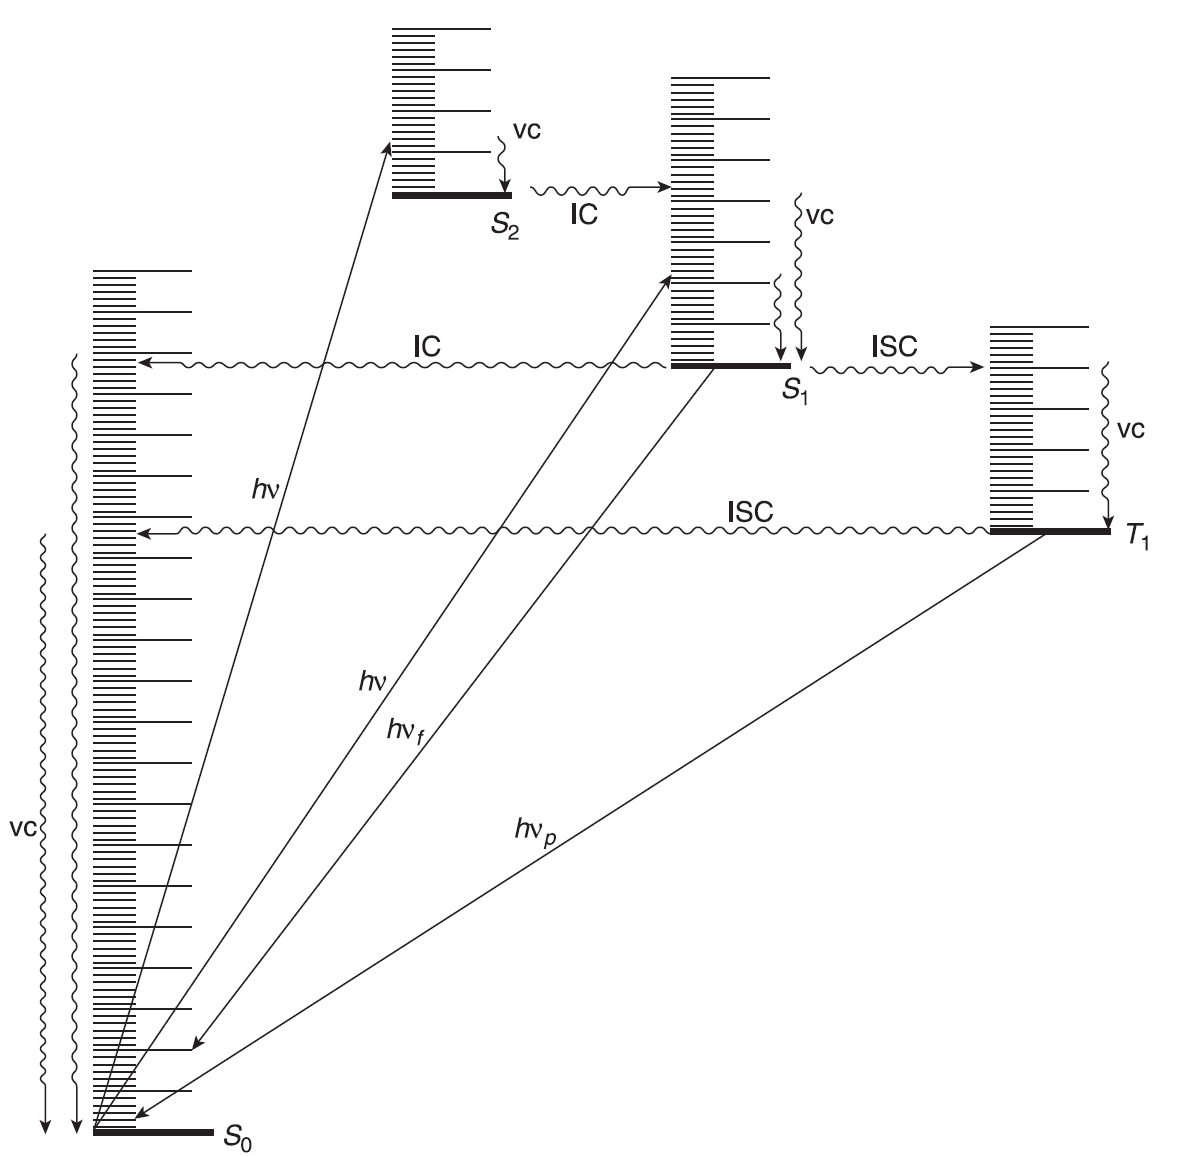 Zmodyfikowany diagram Jabłońskiego przedstawiający przejścia między stanami wzbudzonymi a stanem podstawowym. Procesy promieniste są przedstawiane liniami prostymi, procesy bezpromieniste falistymi. vc – kaskada wibracyjna; hvf – fluorescencja; hvp – fosforescencja.